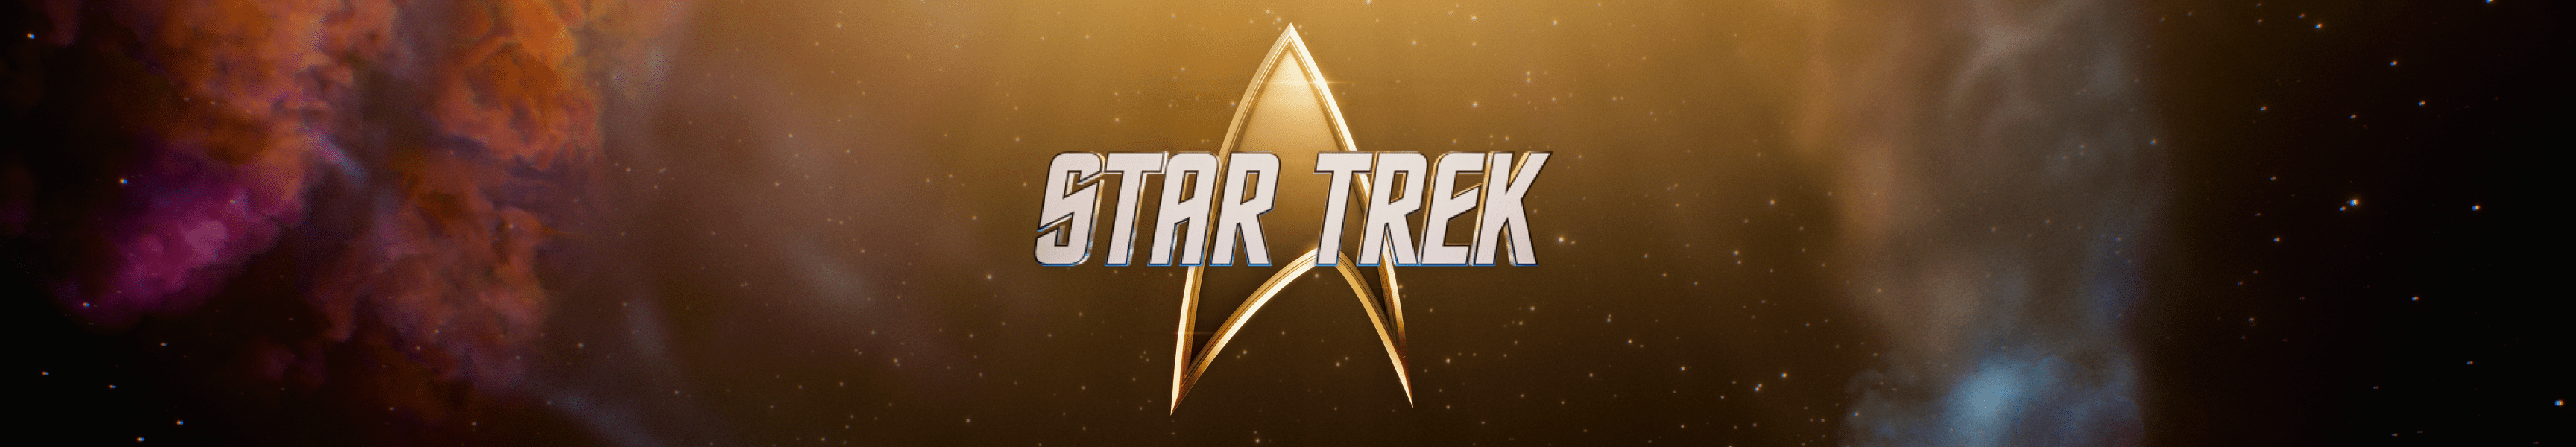 Notre cadeau pour vous : Réduction Star Trek à prix réduit